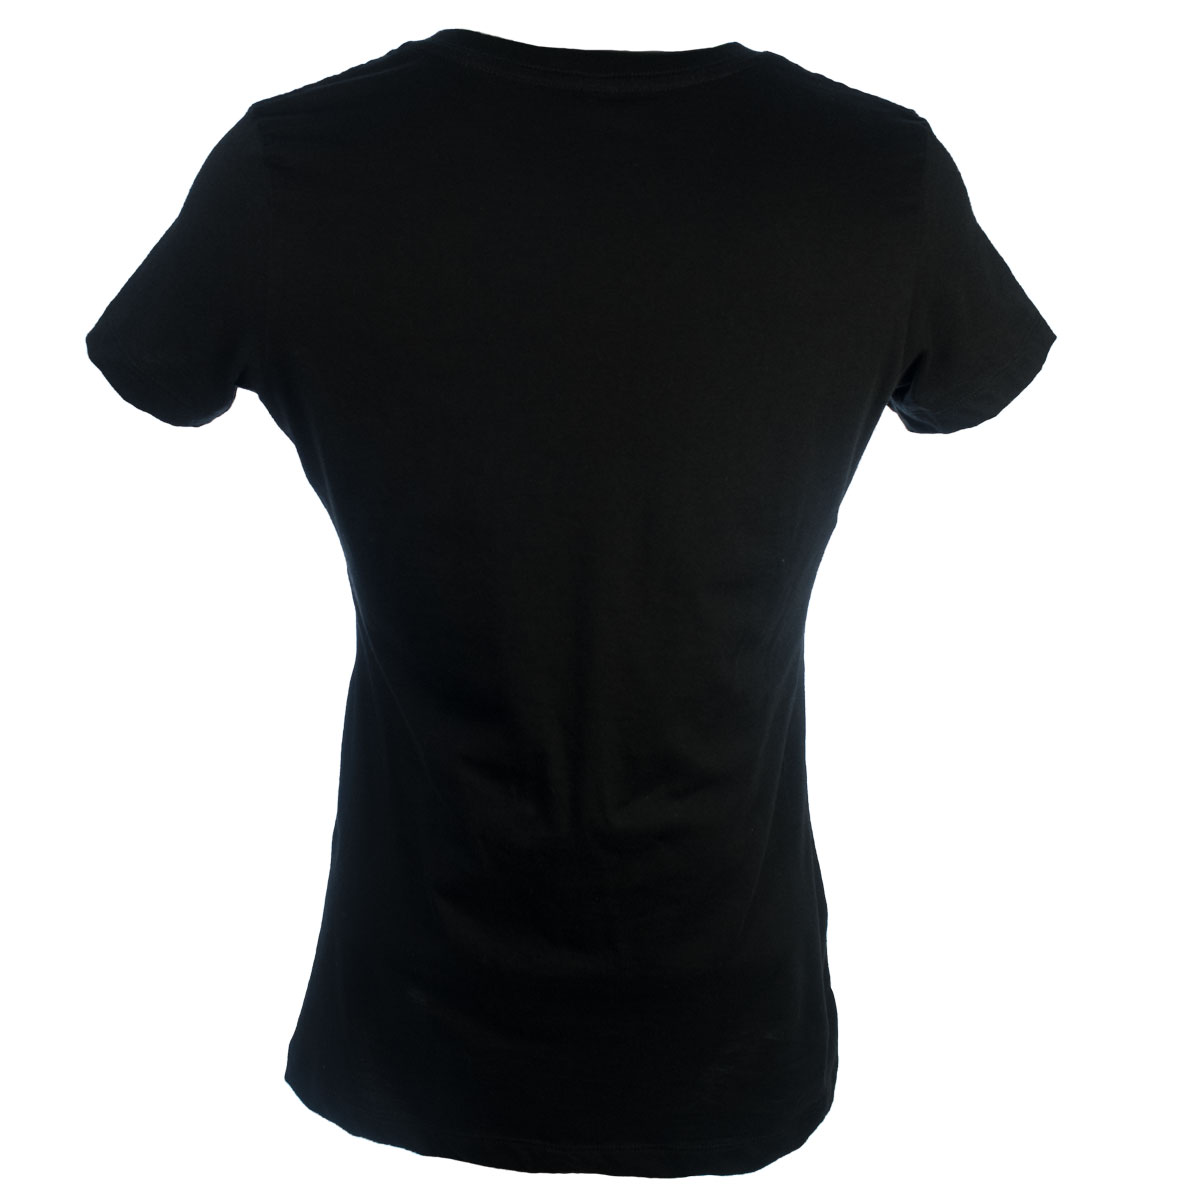 Black Shirt For Women